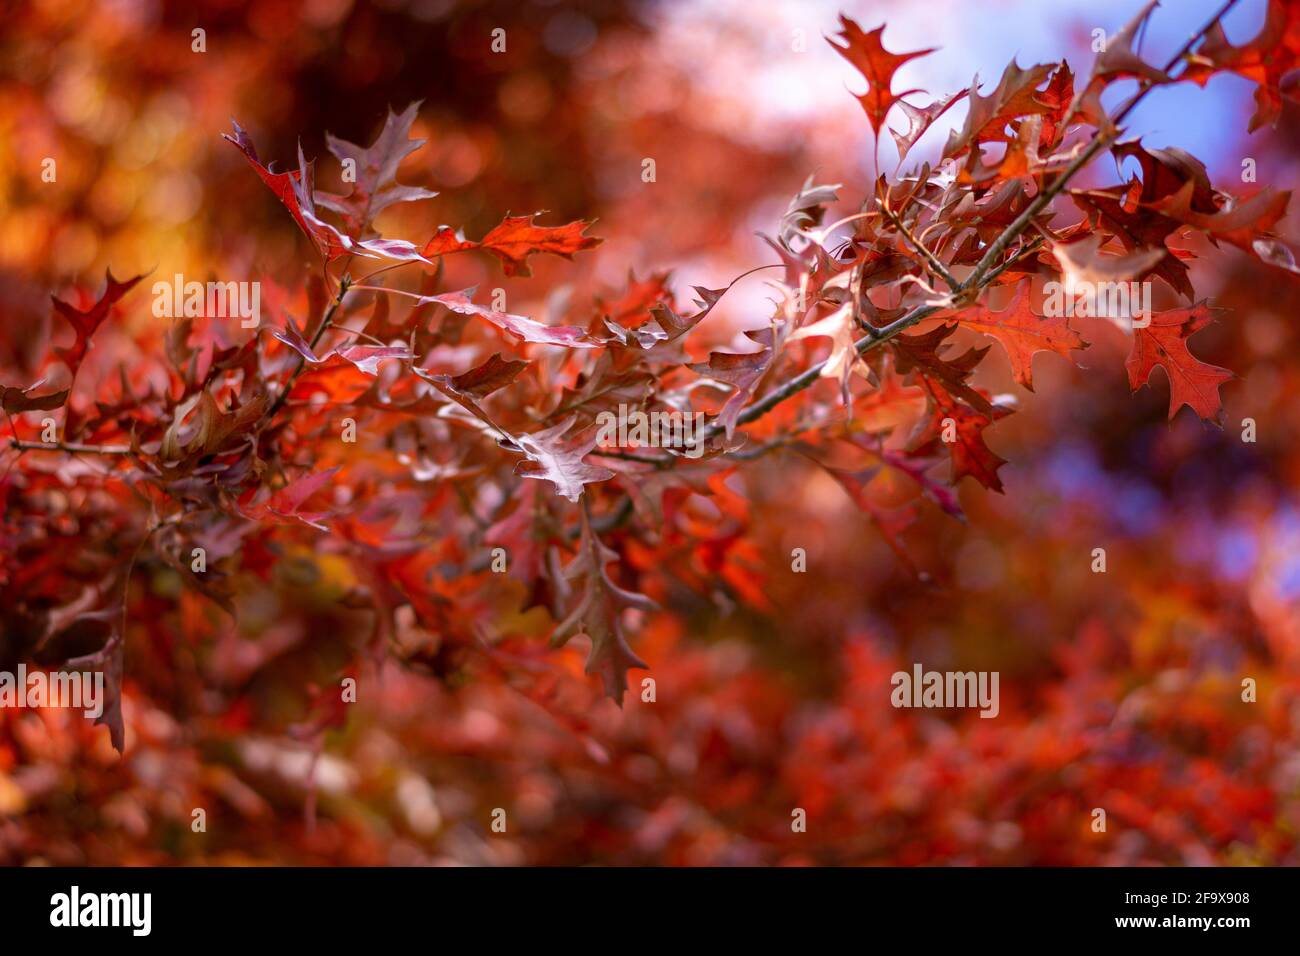 Red autumn foliage. Ben Lomond, New England Tablelands. NSW Australia Stock Photo